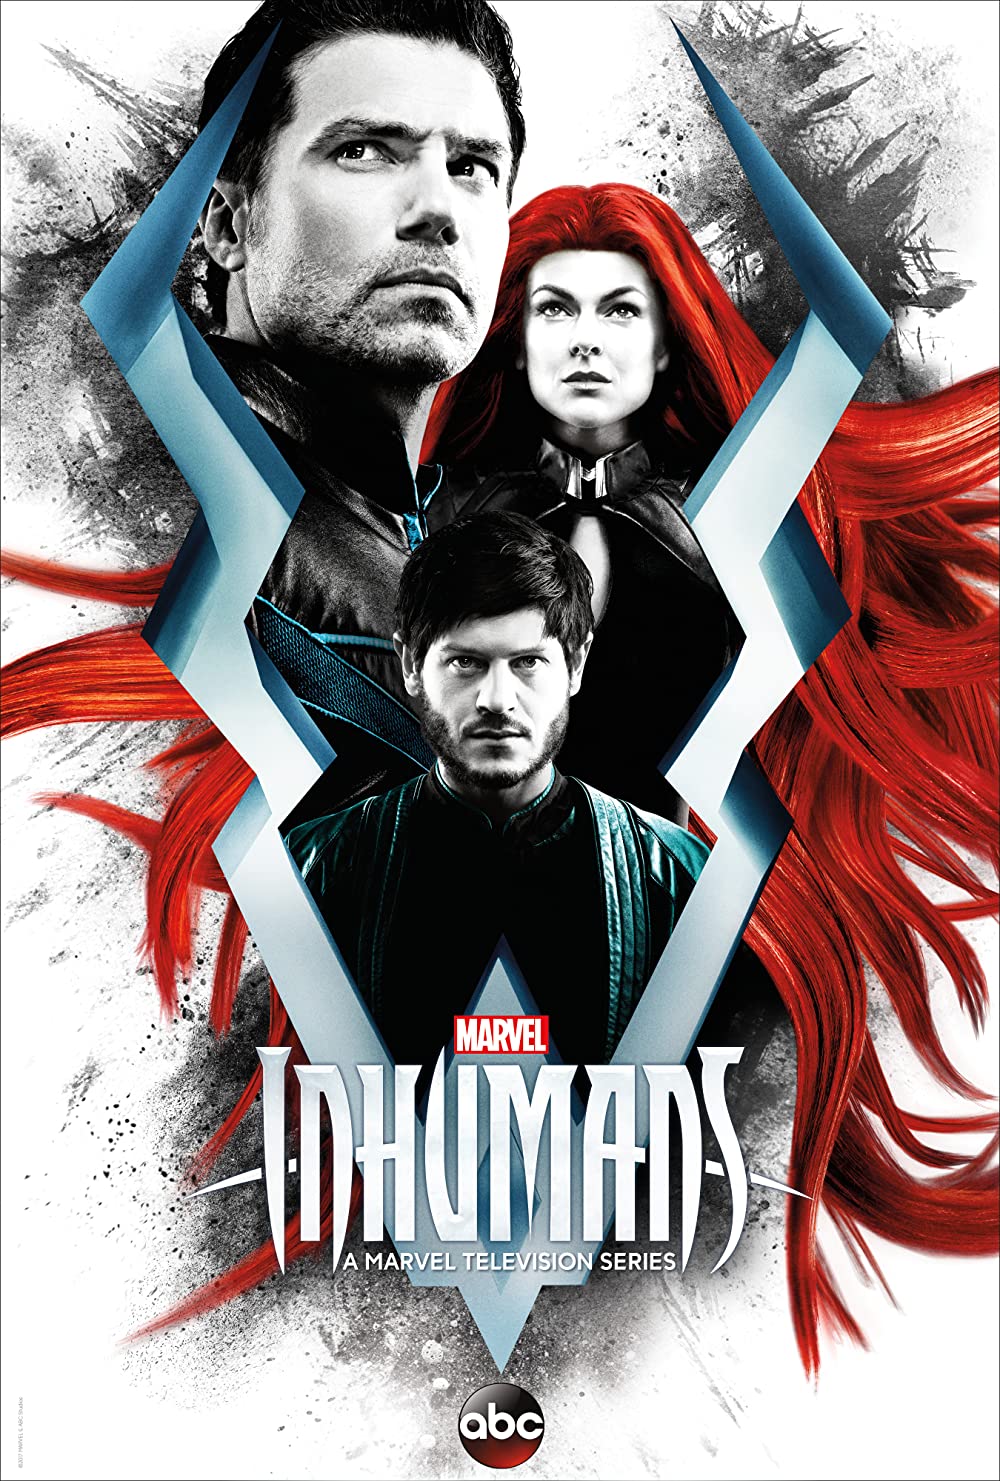 Filmbeschreibung zu Marvel's Inhumans